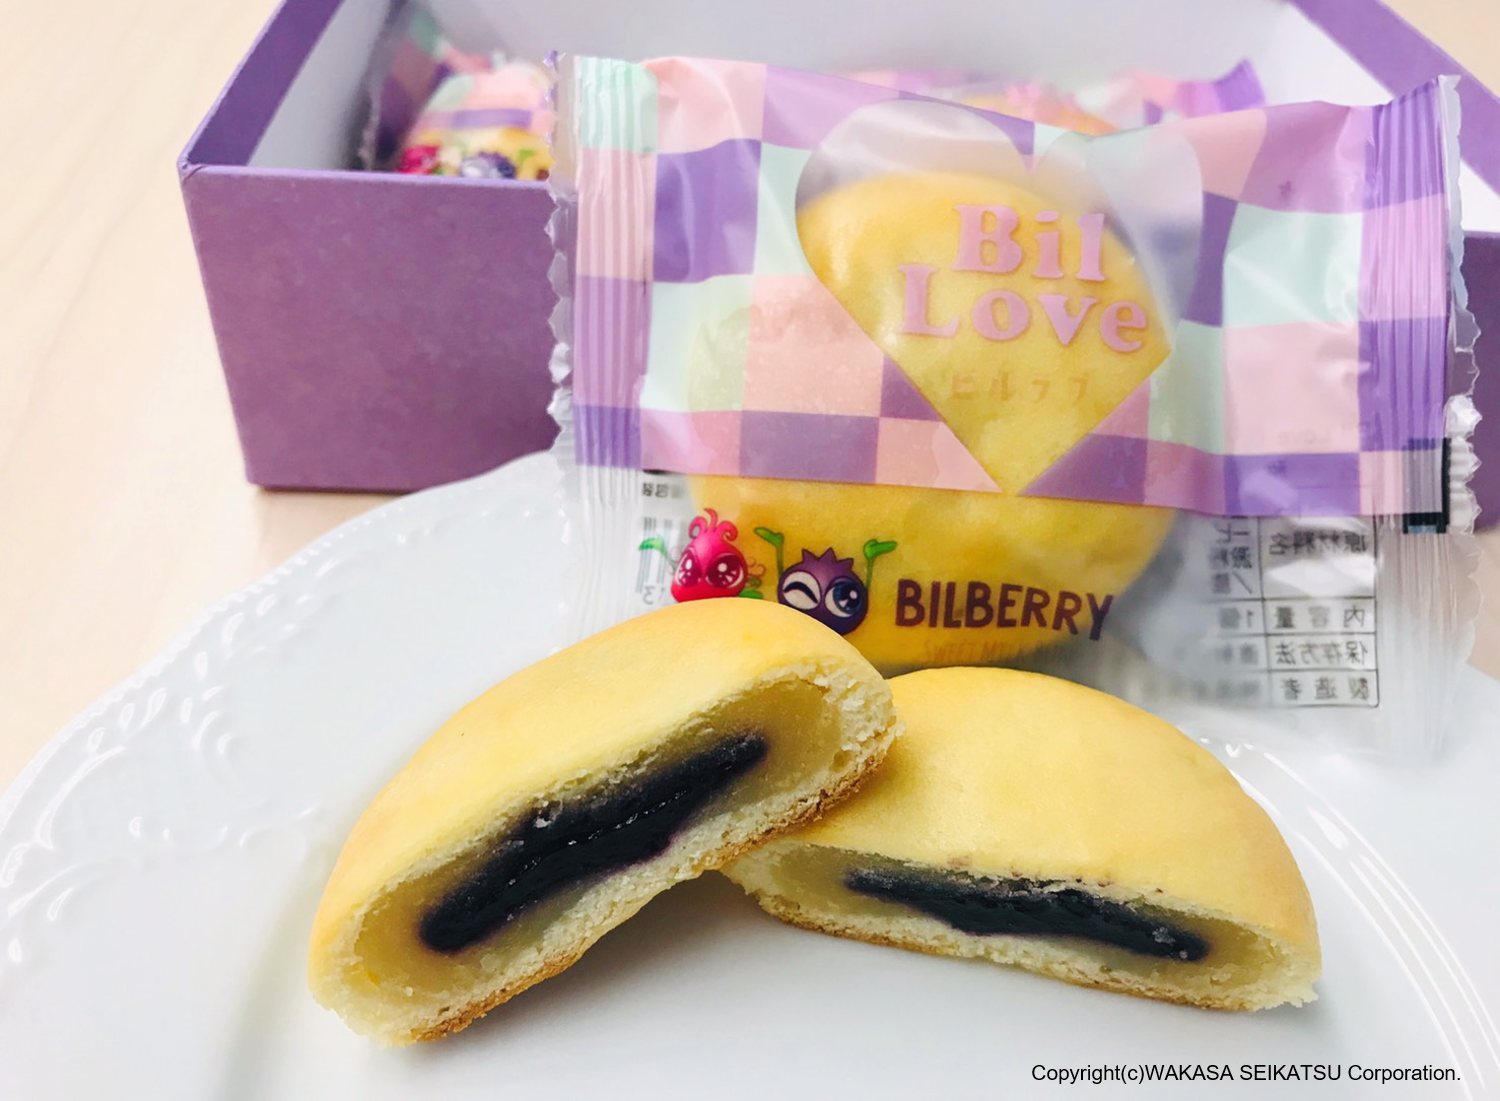 [新発売] わかさ生活のブルーベリーと京都の老舗菓子店とのコラボ商品『Bil Love（ビルラブ）』